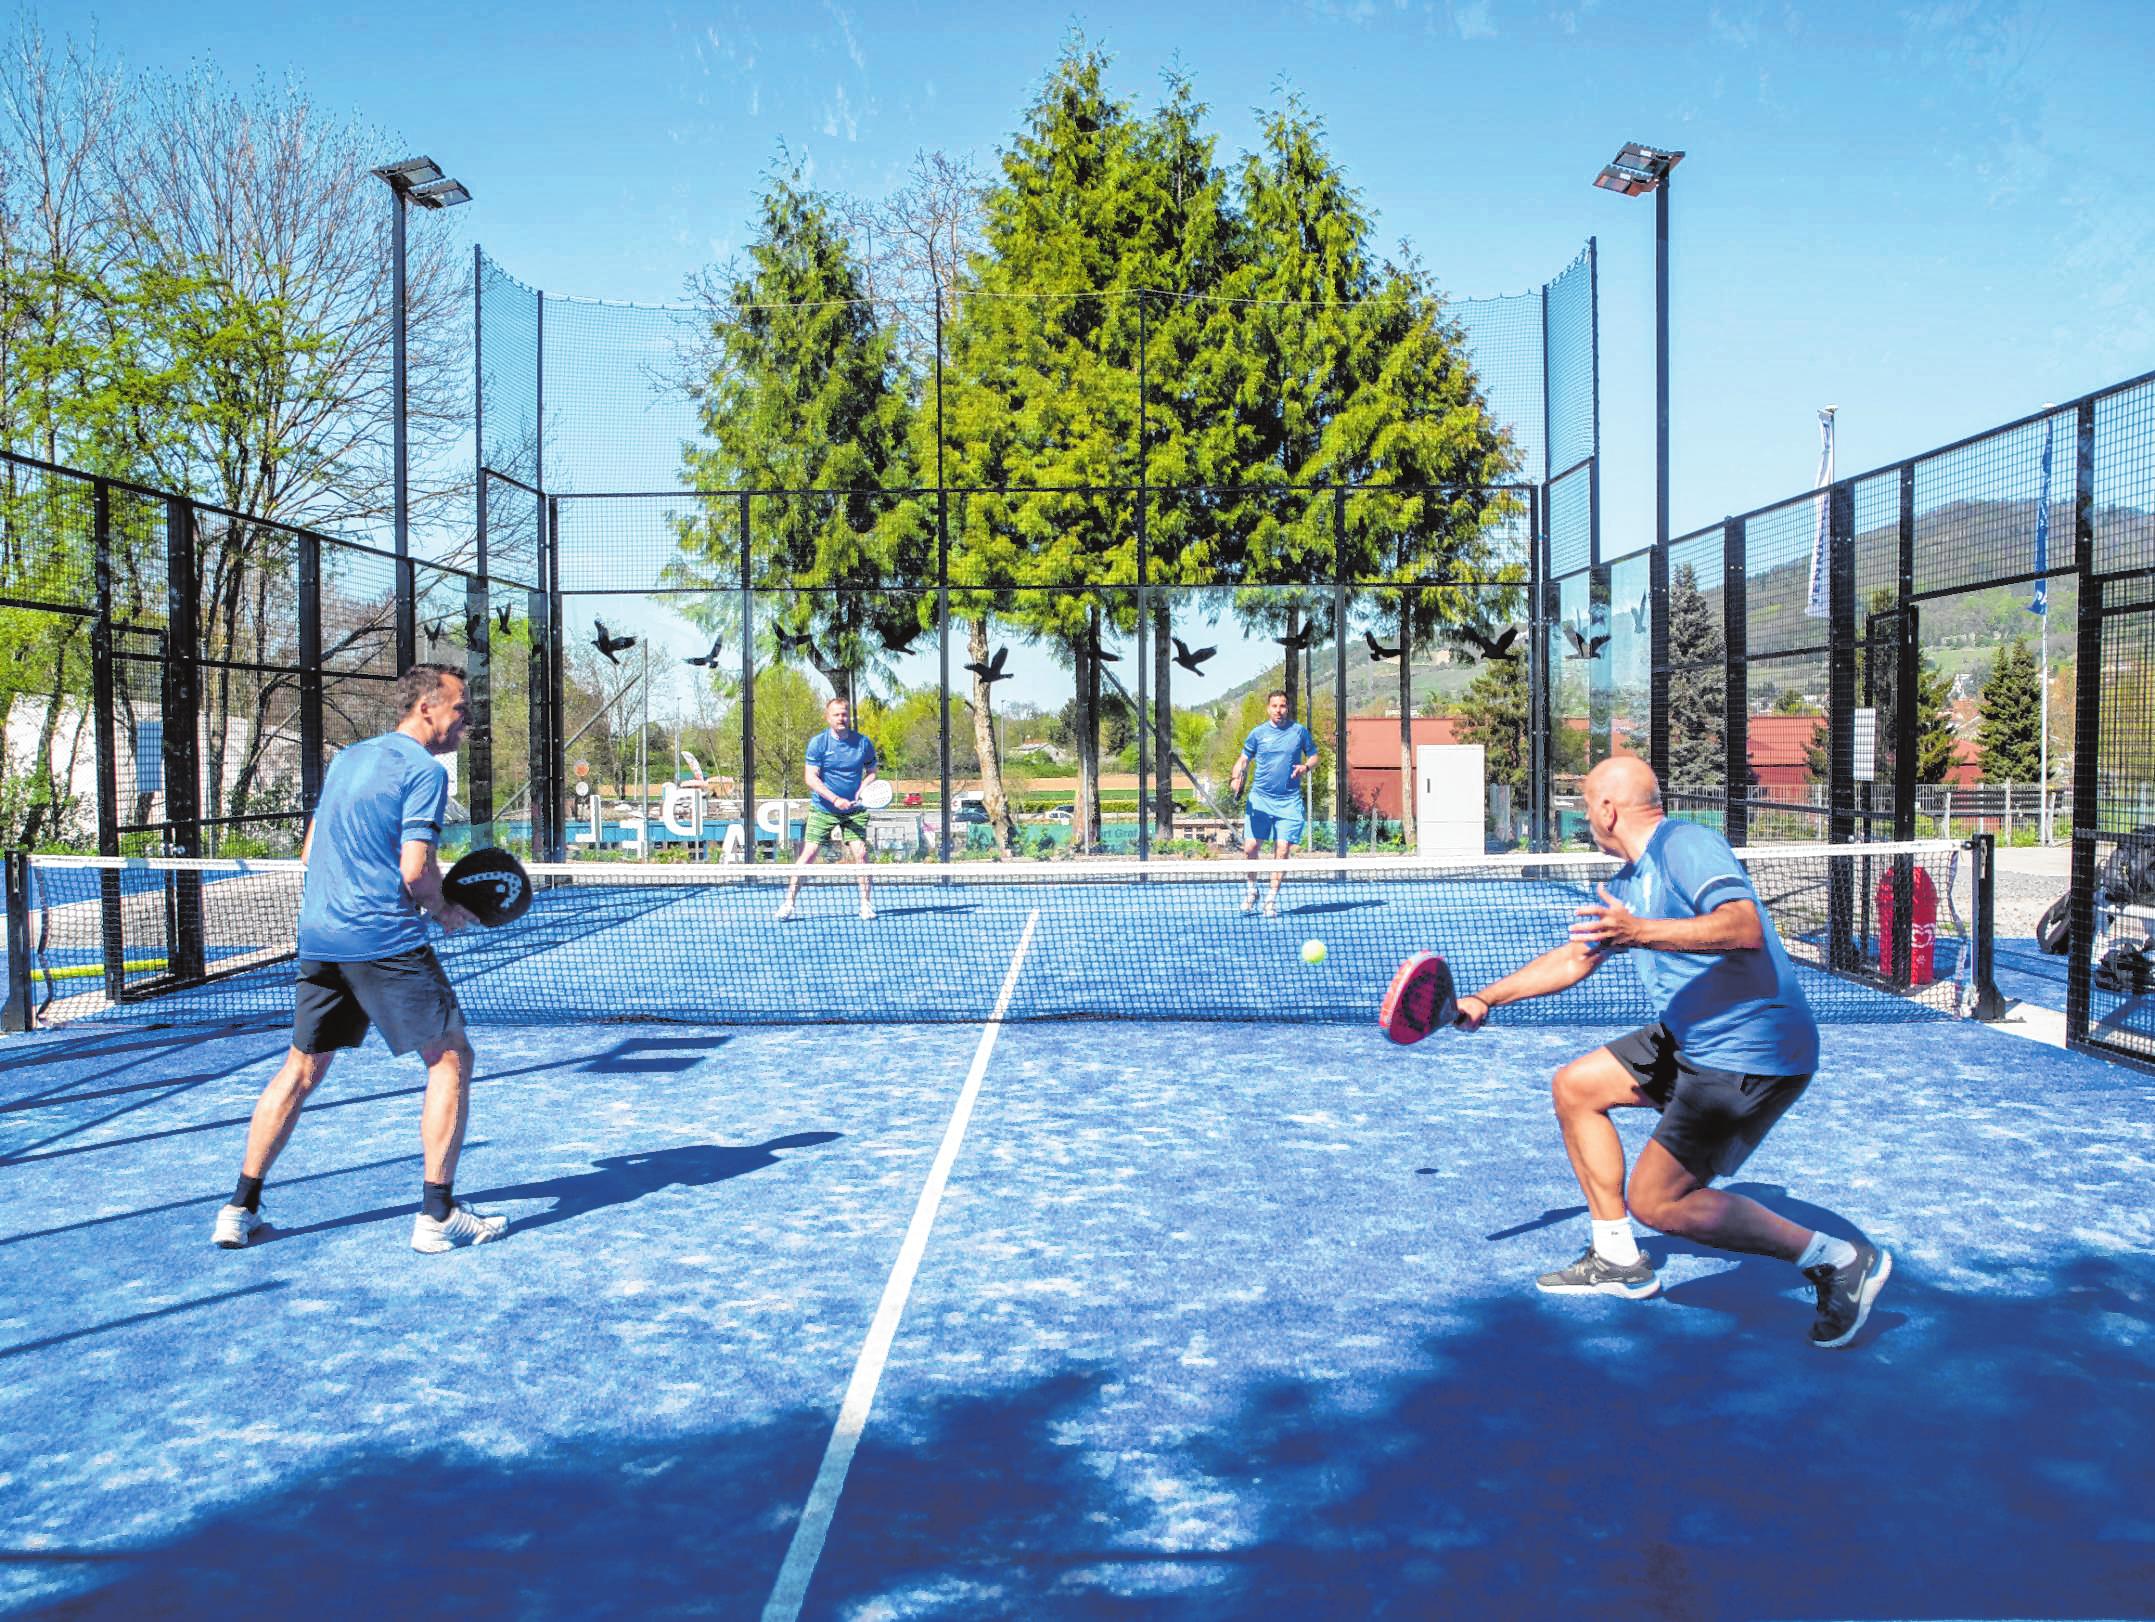 Der Padel-Platz ist von Kunststoffwänden umgeben, die ähnlich wie beim Squash ins Spiel miteinbezogen werden. Bild: Thomas Neu